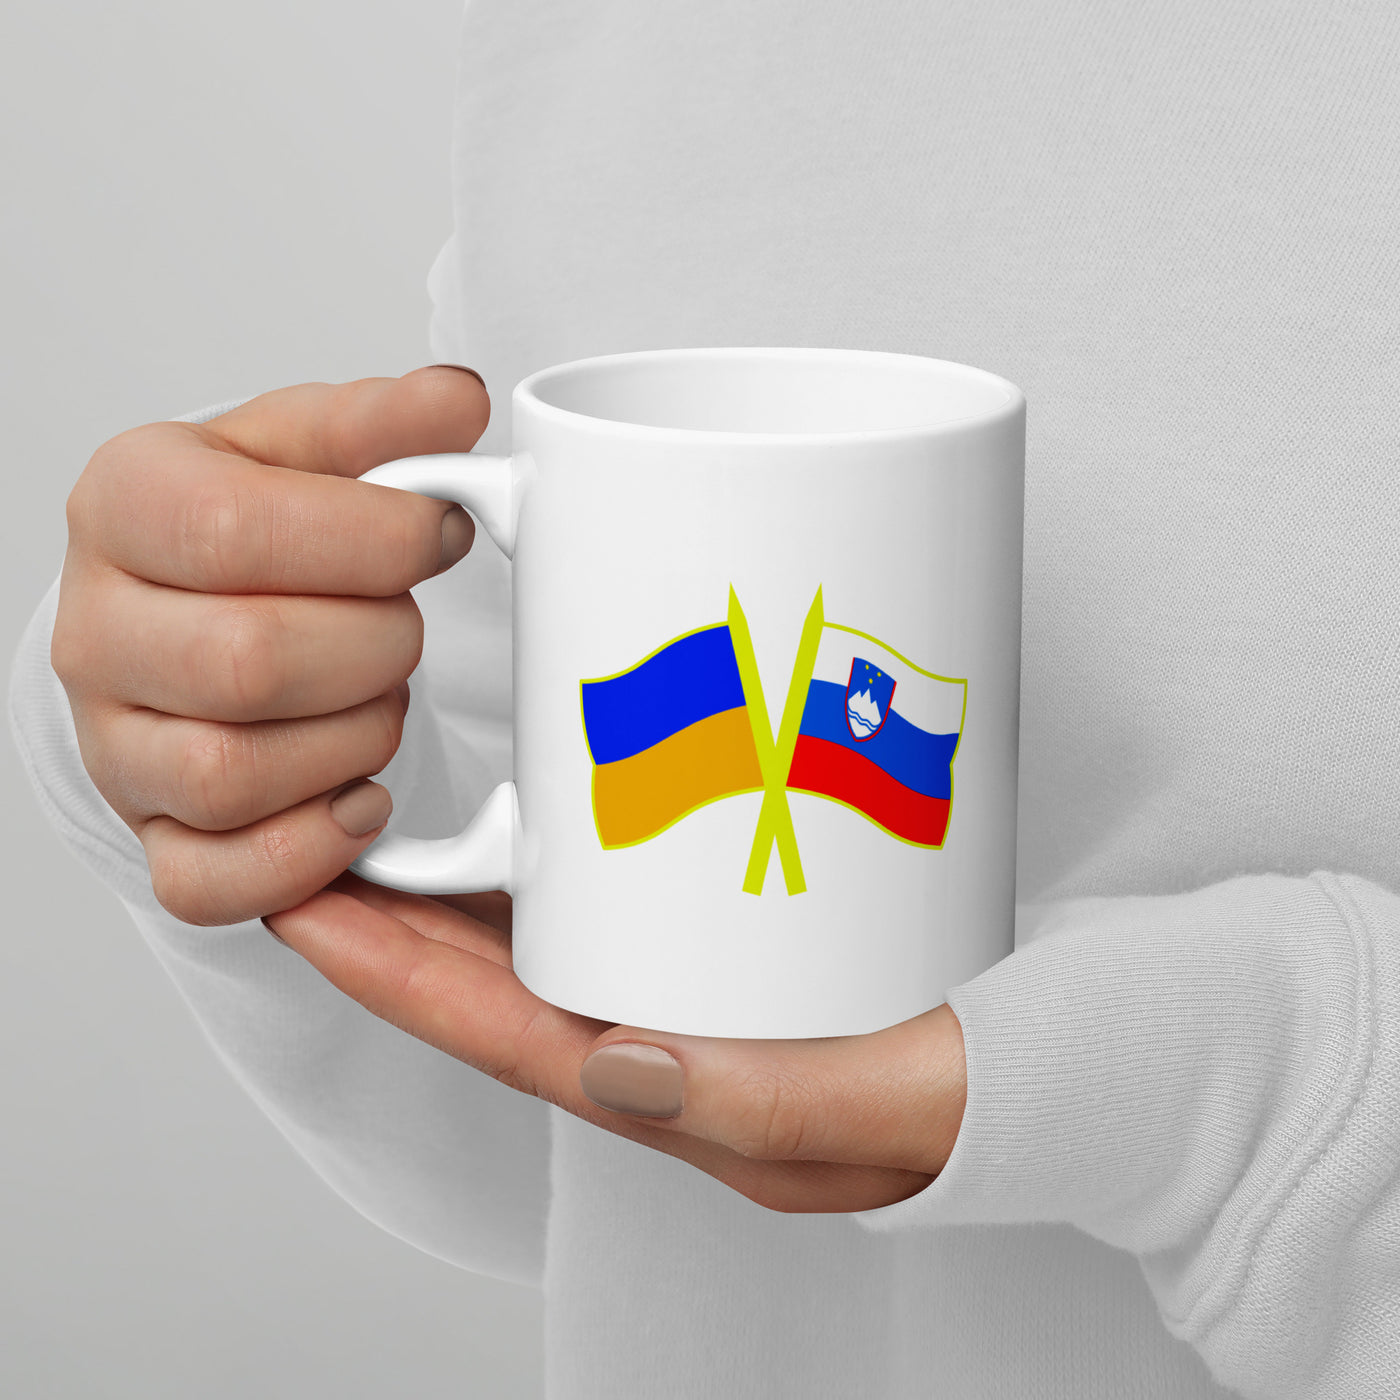 Slovenia-Ukraine Mug